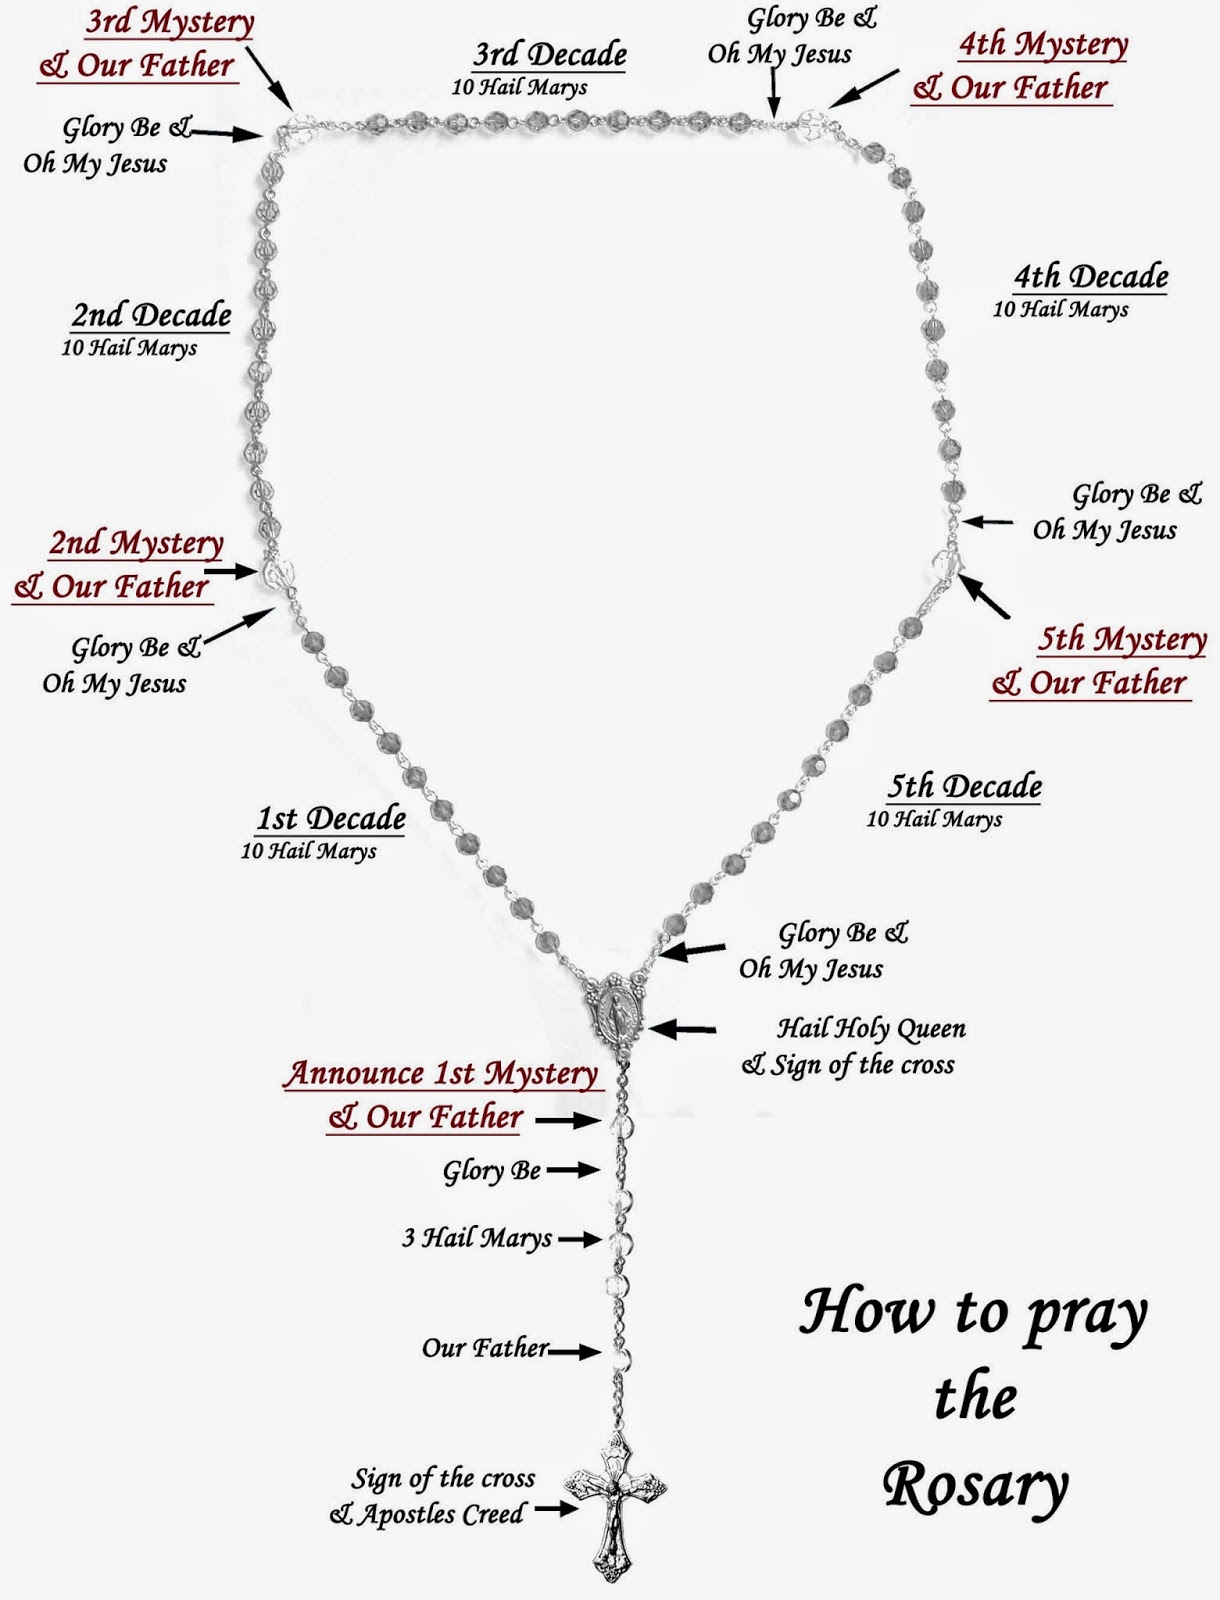 "Beads of Joy" by RosaryManJim How To Pray The Rosary